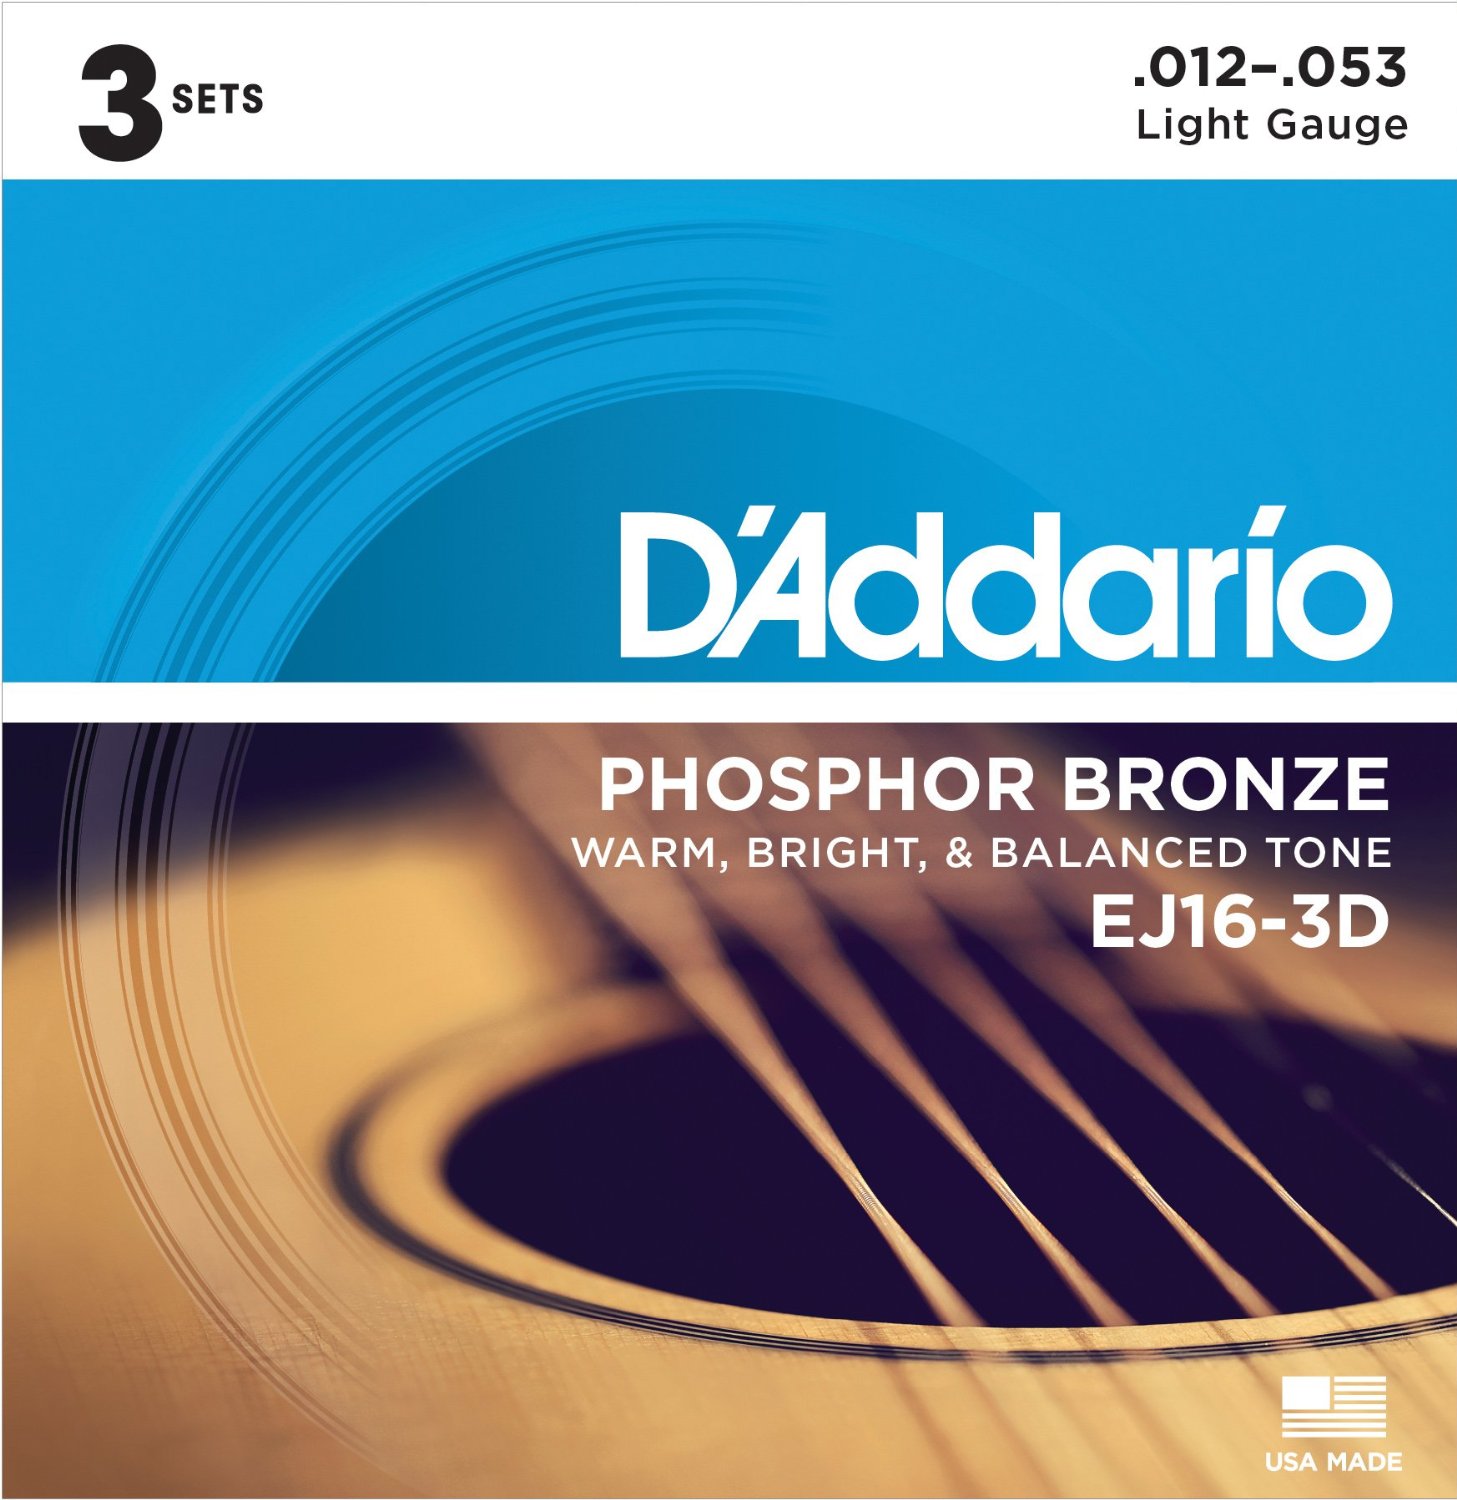 D'Addario EJ16-3D Bronce fosforado para guitarra acústica, luz, 3 Sets